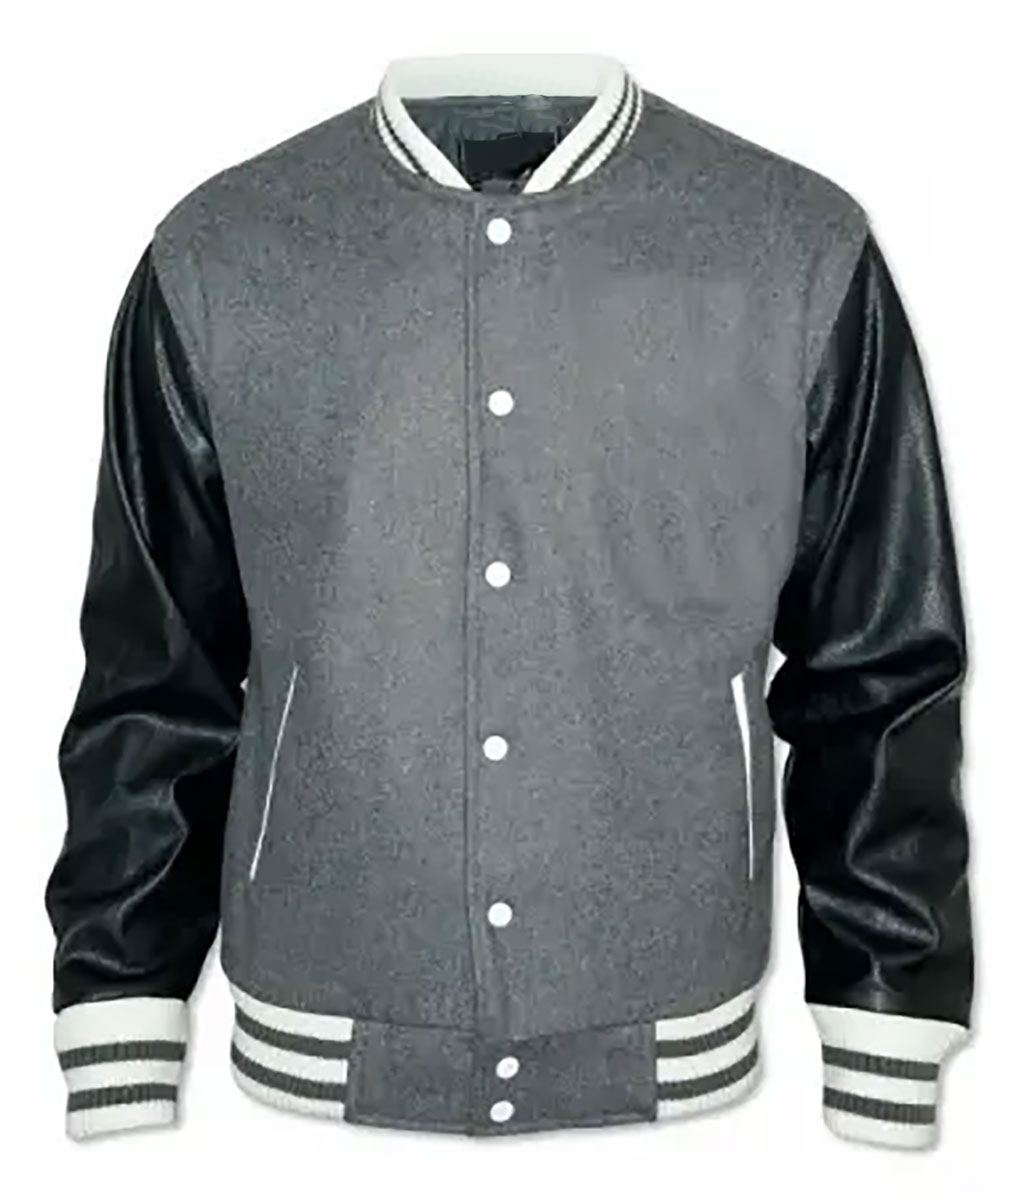 Bradford Grey Varsity Jacket